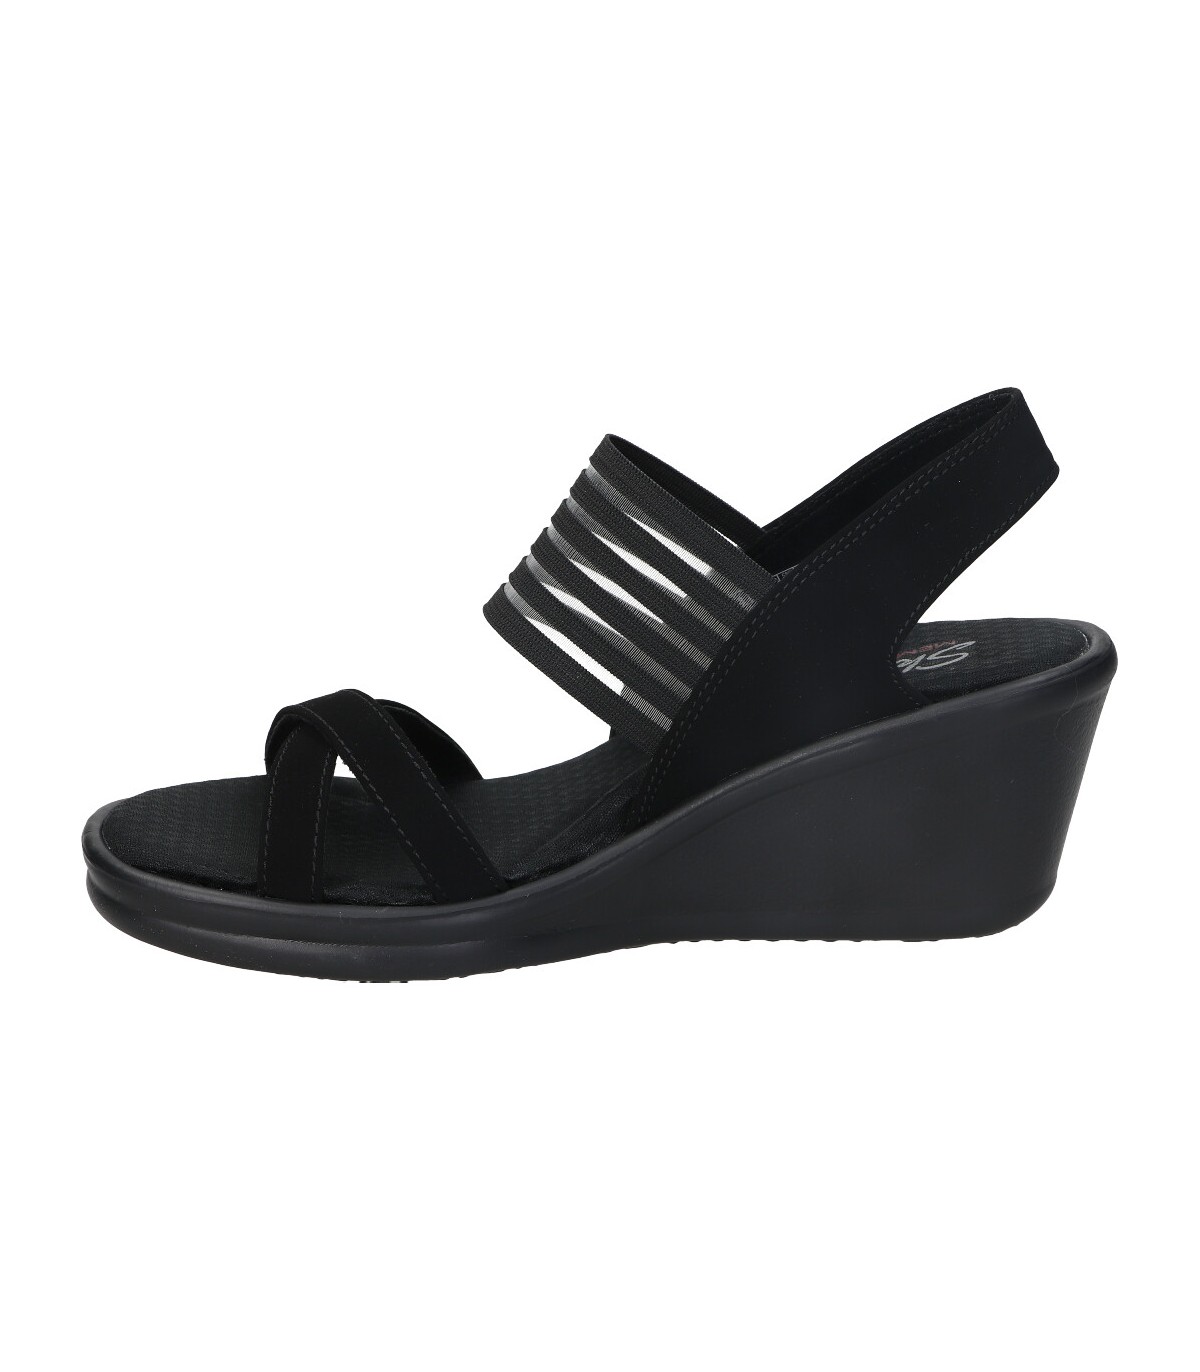 Sandalias en color negro para mujer Envío